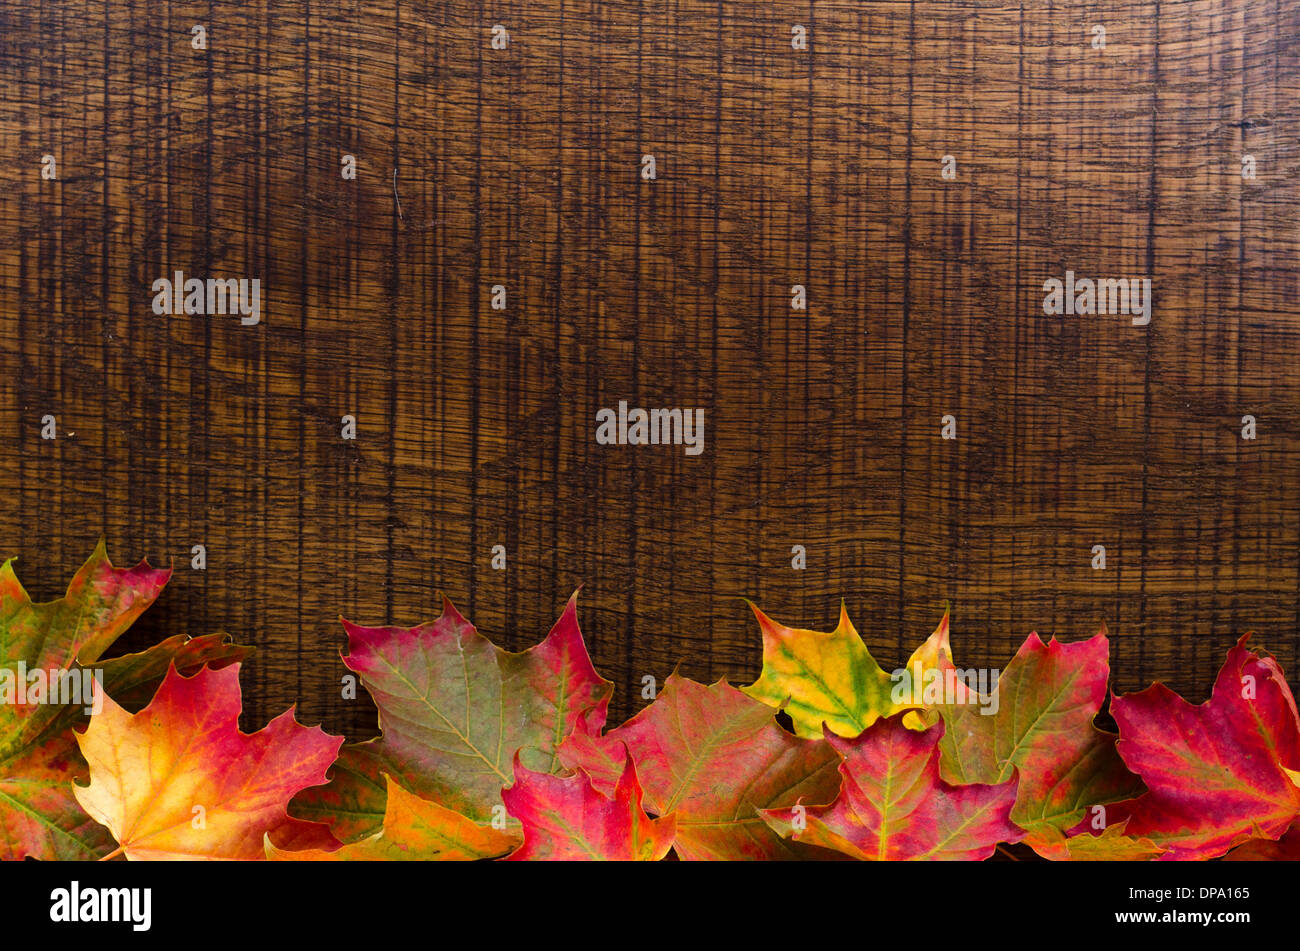 Un fond de bois en chêne décoré de feuilles d'automne le long du bord inférieur, avec place pour le texte. Banque D'Images